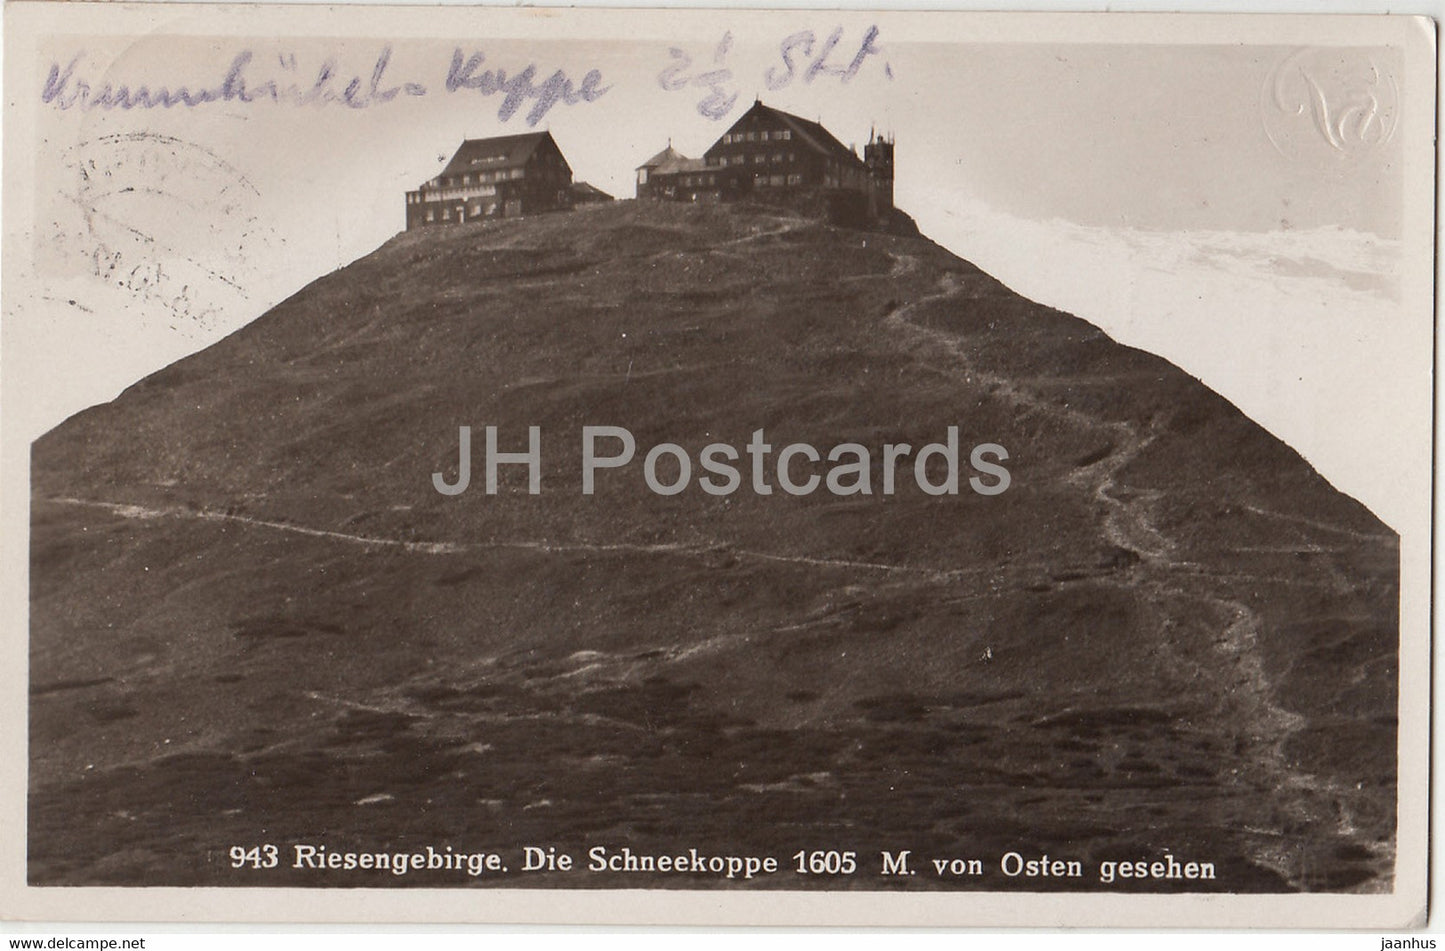 Riesengebirge - Die Schneekoppe - 1605 m  von Osten Gesehen - old postcard - 1930 - Poland - used - JH Postcards